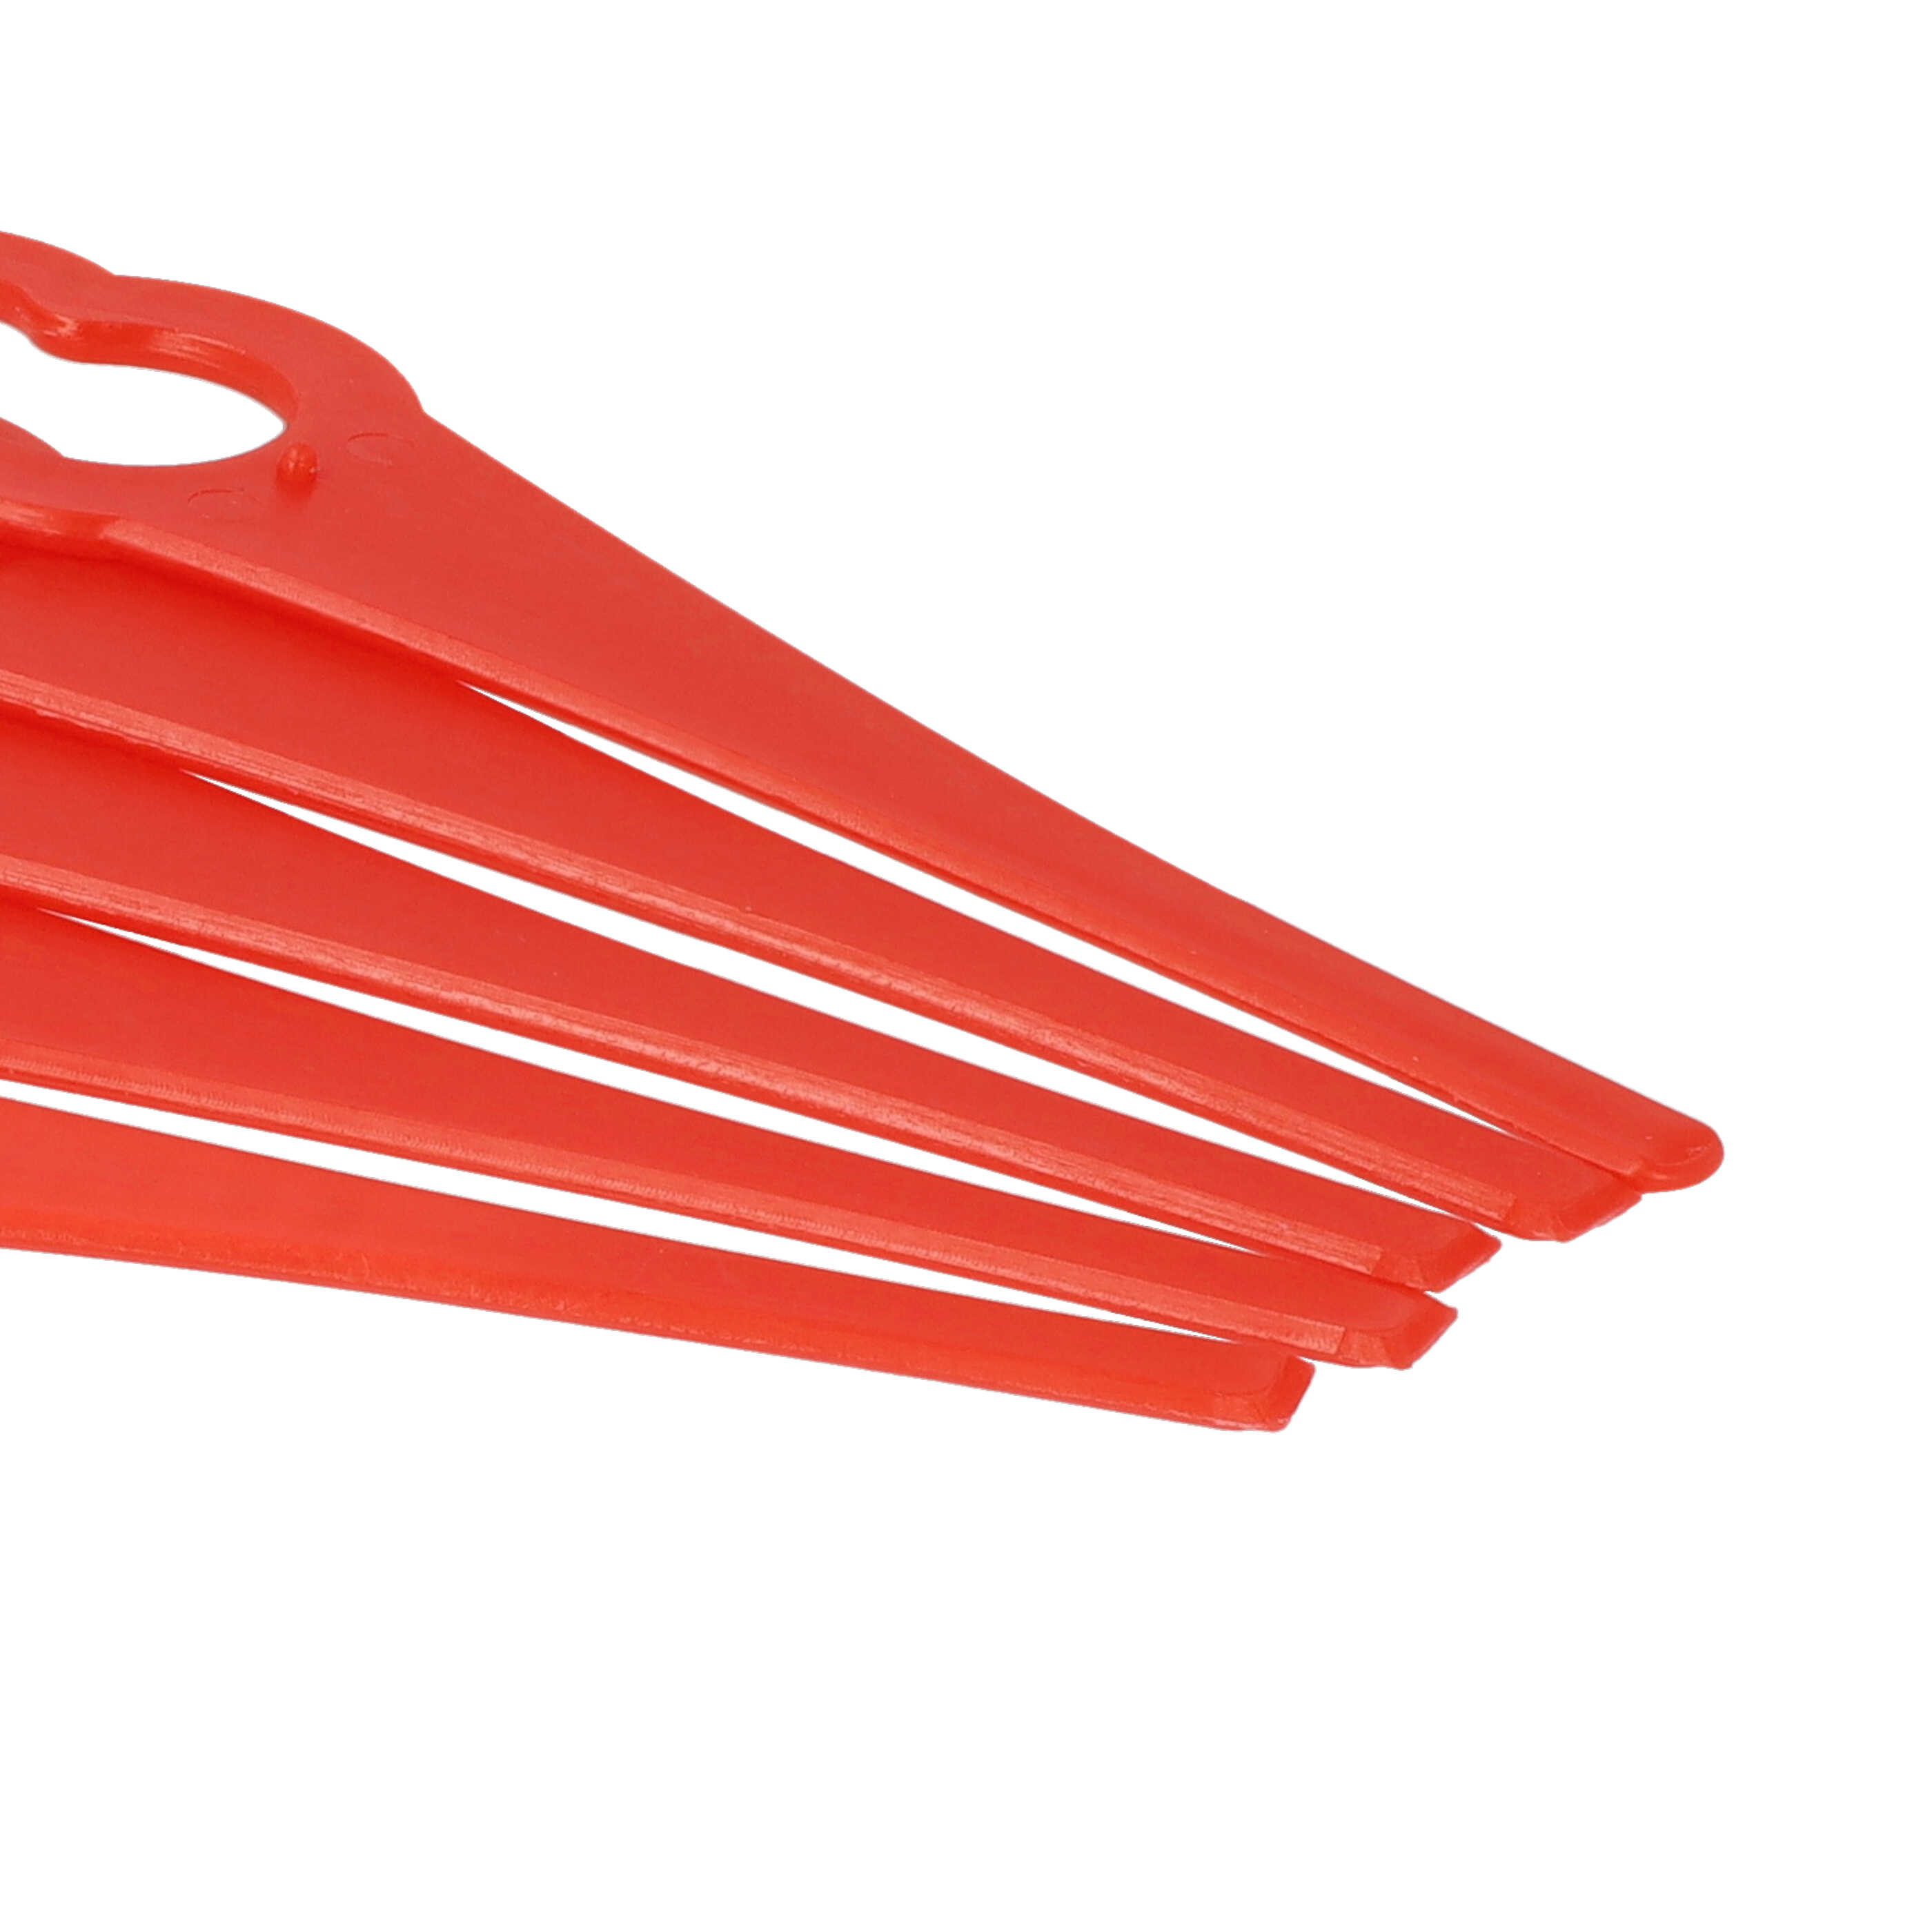 50x Lama sostituisce ALM BQ026 per tagliaerba - rosso, nylon / plastica